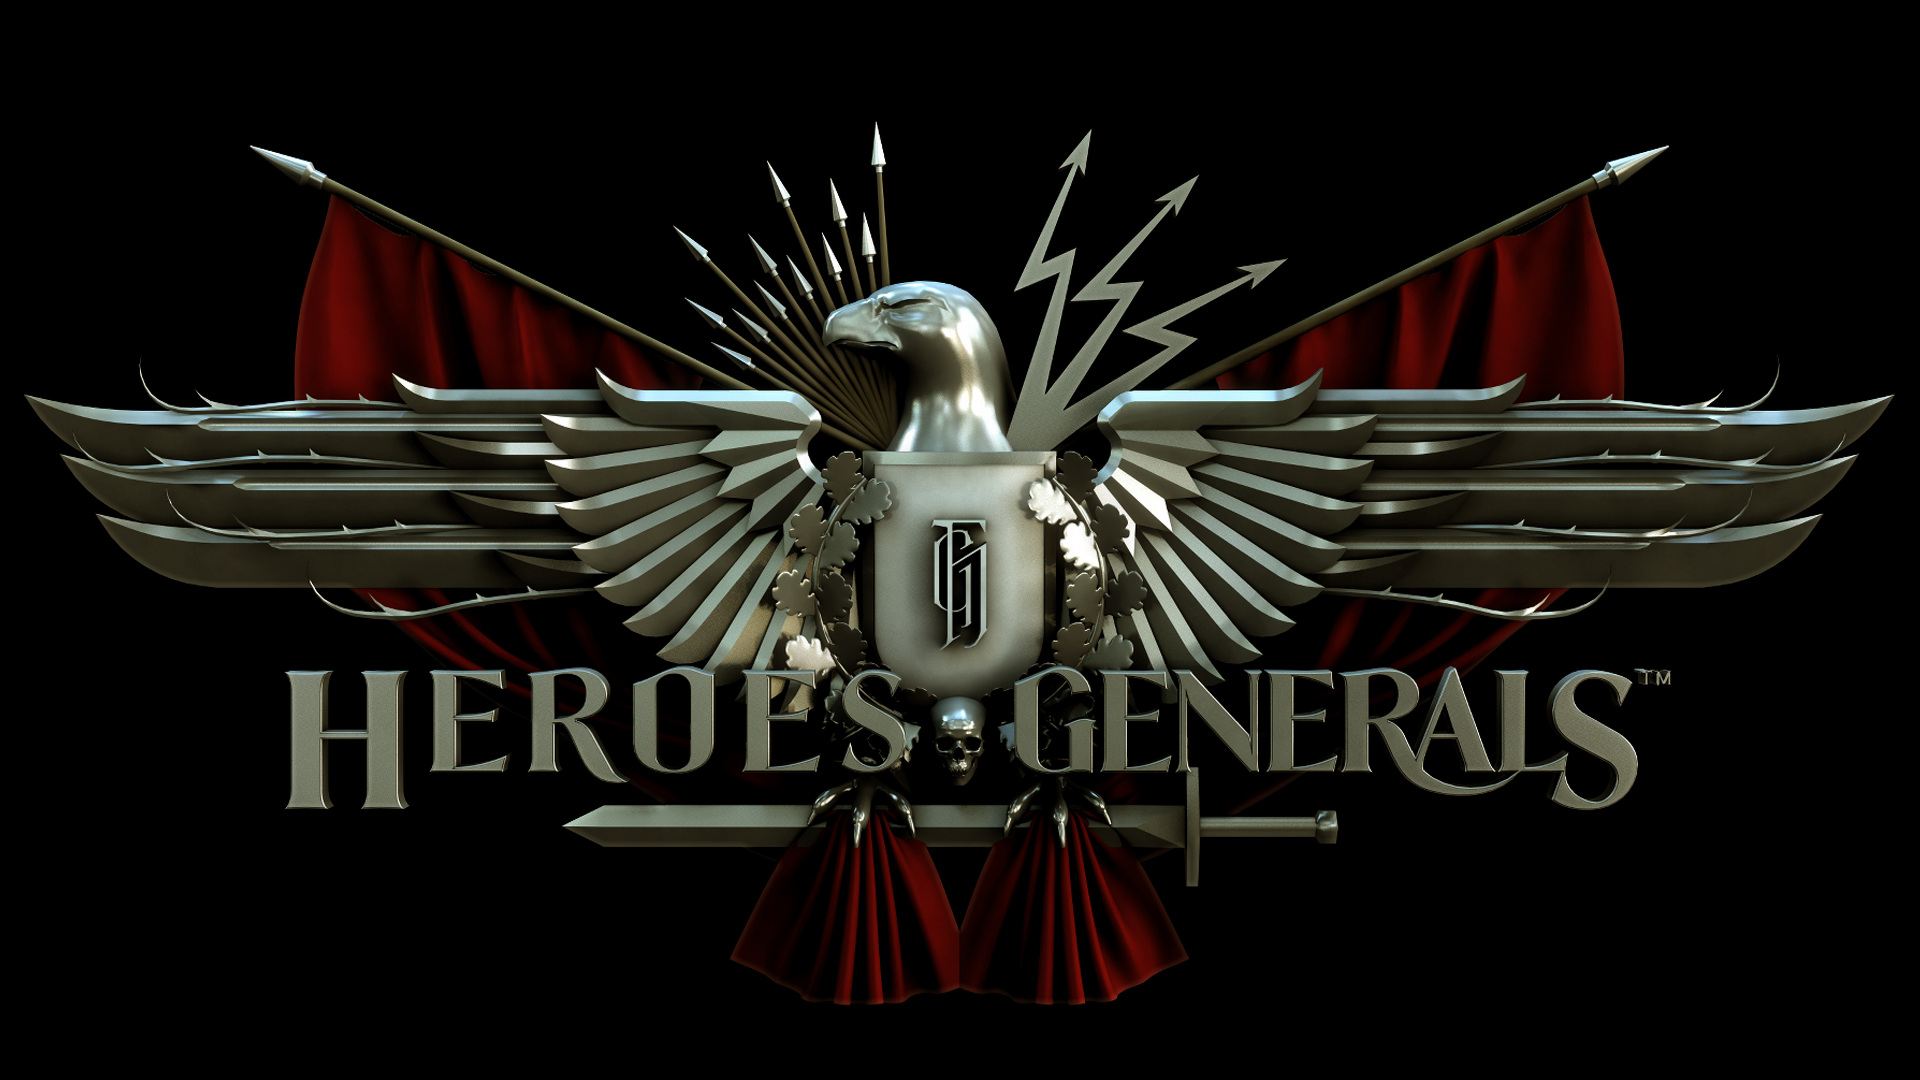 Steam heroes of generals фото 69